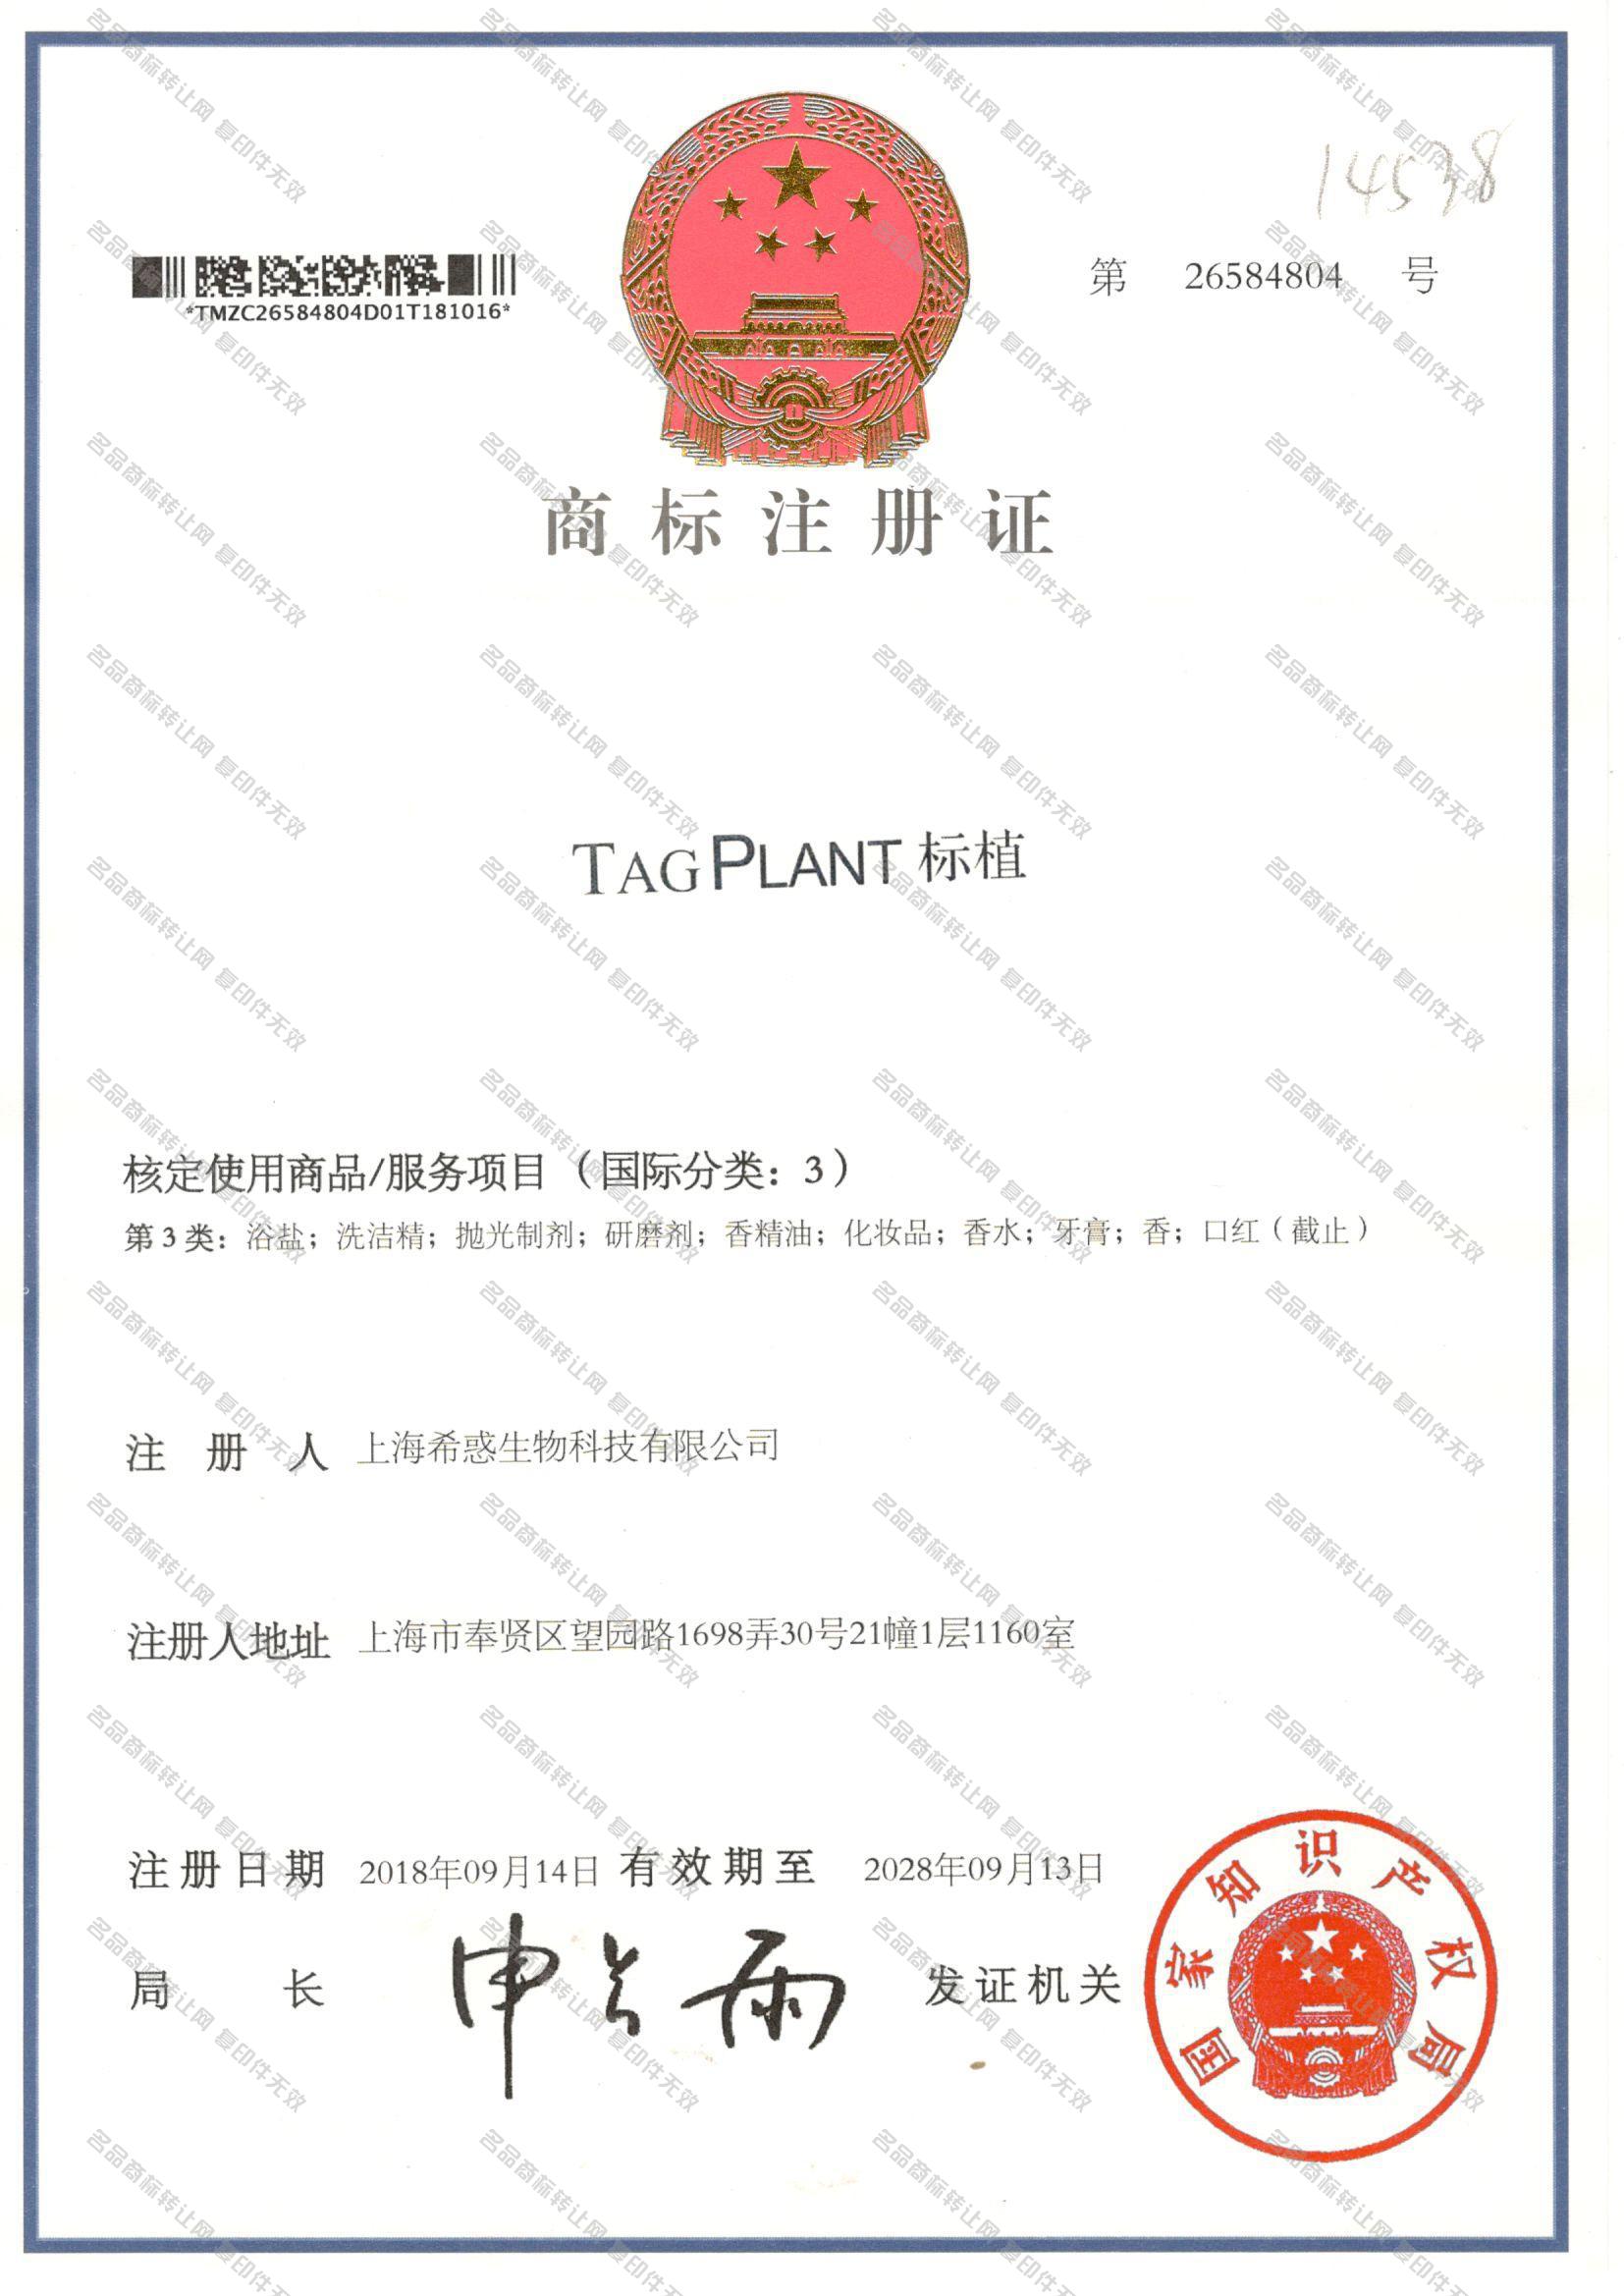 标植 TAG PLANT注册证